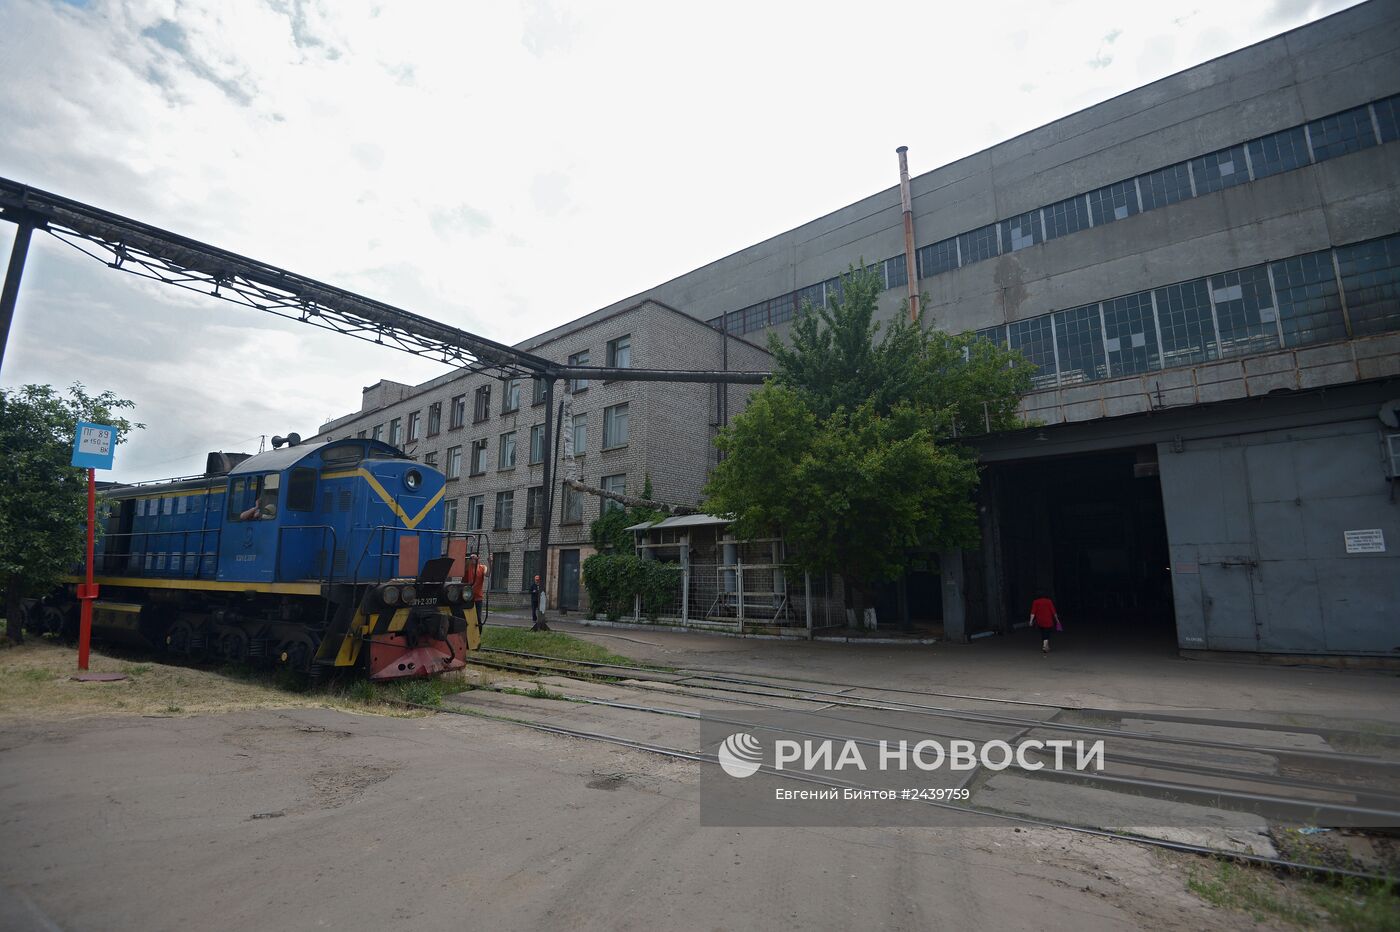 Луганский тепловозостроительный завод